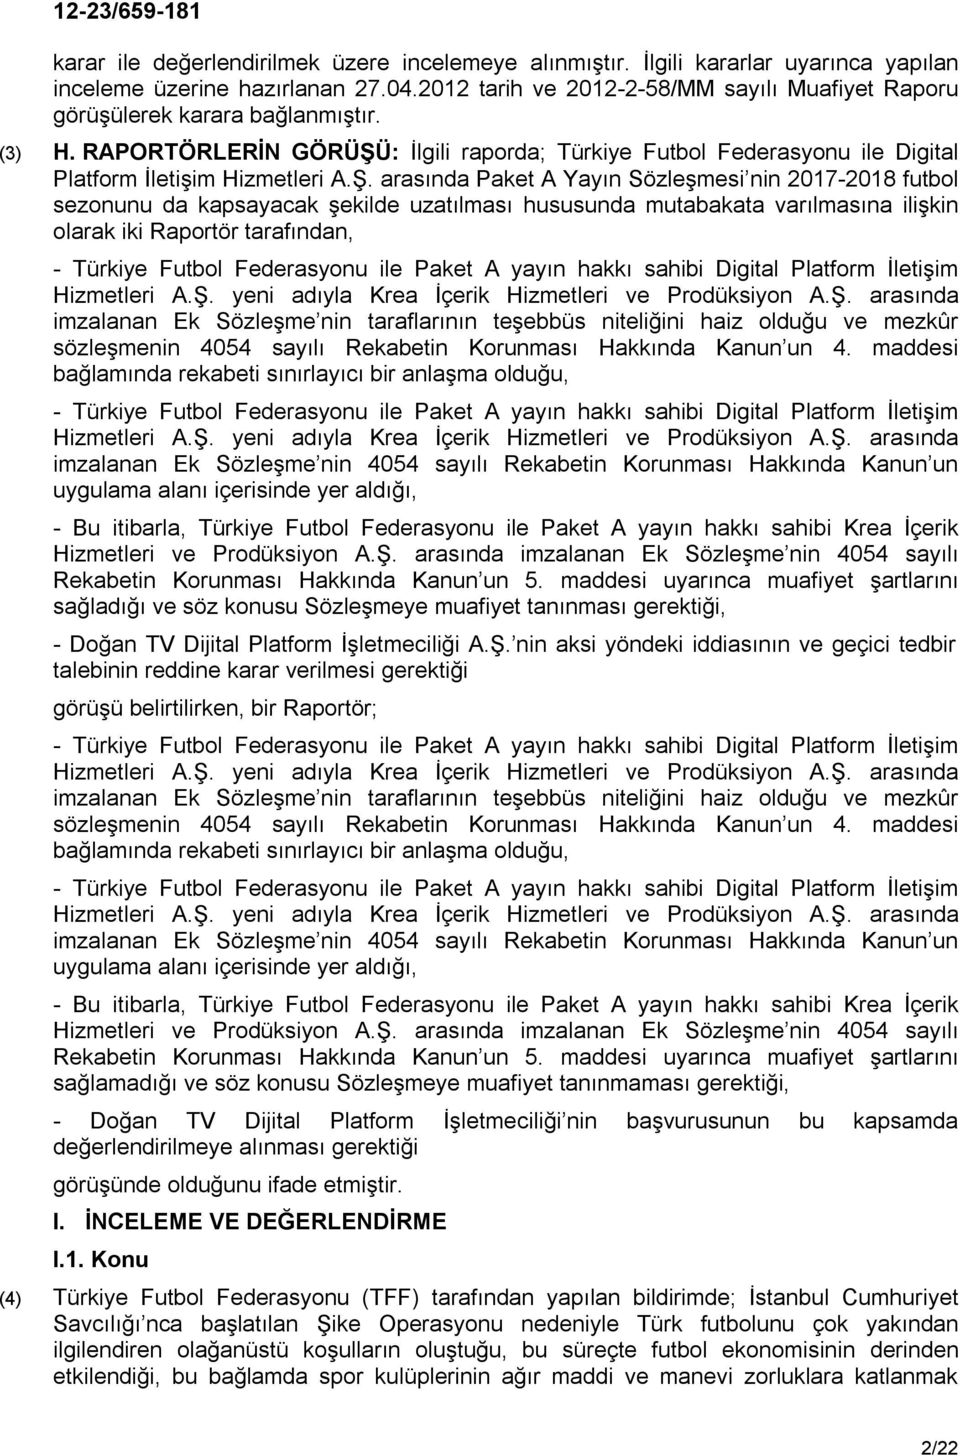 : İlgili raporda; Türkiye Futbol Federasyonu ile Digital Platform İletişim Hizmetleri A.Ş.